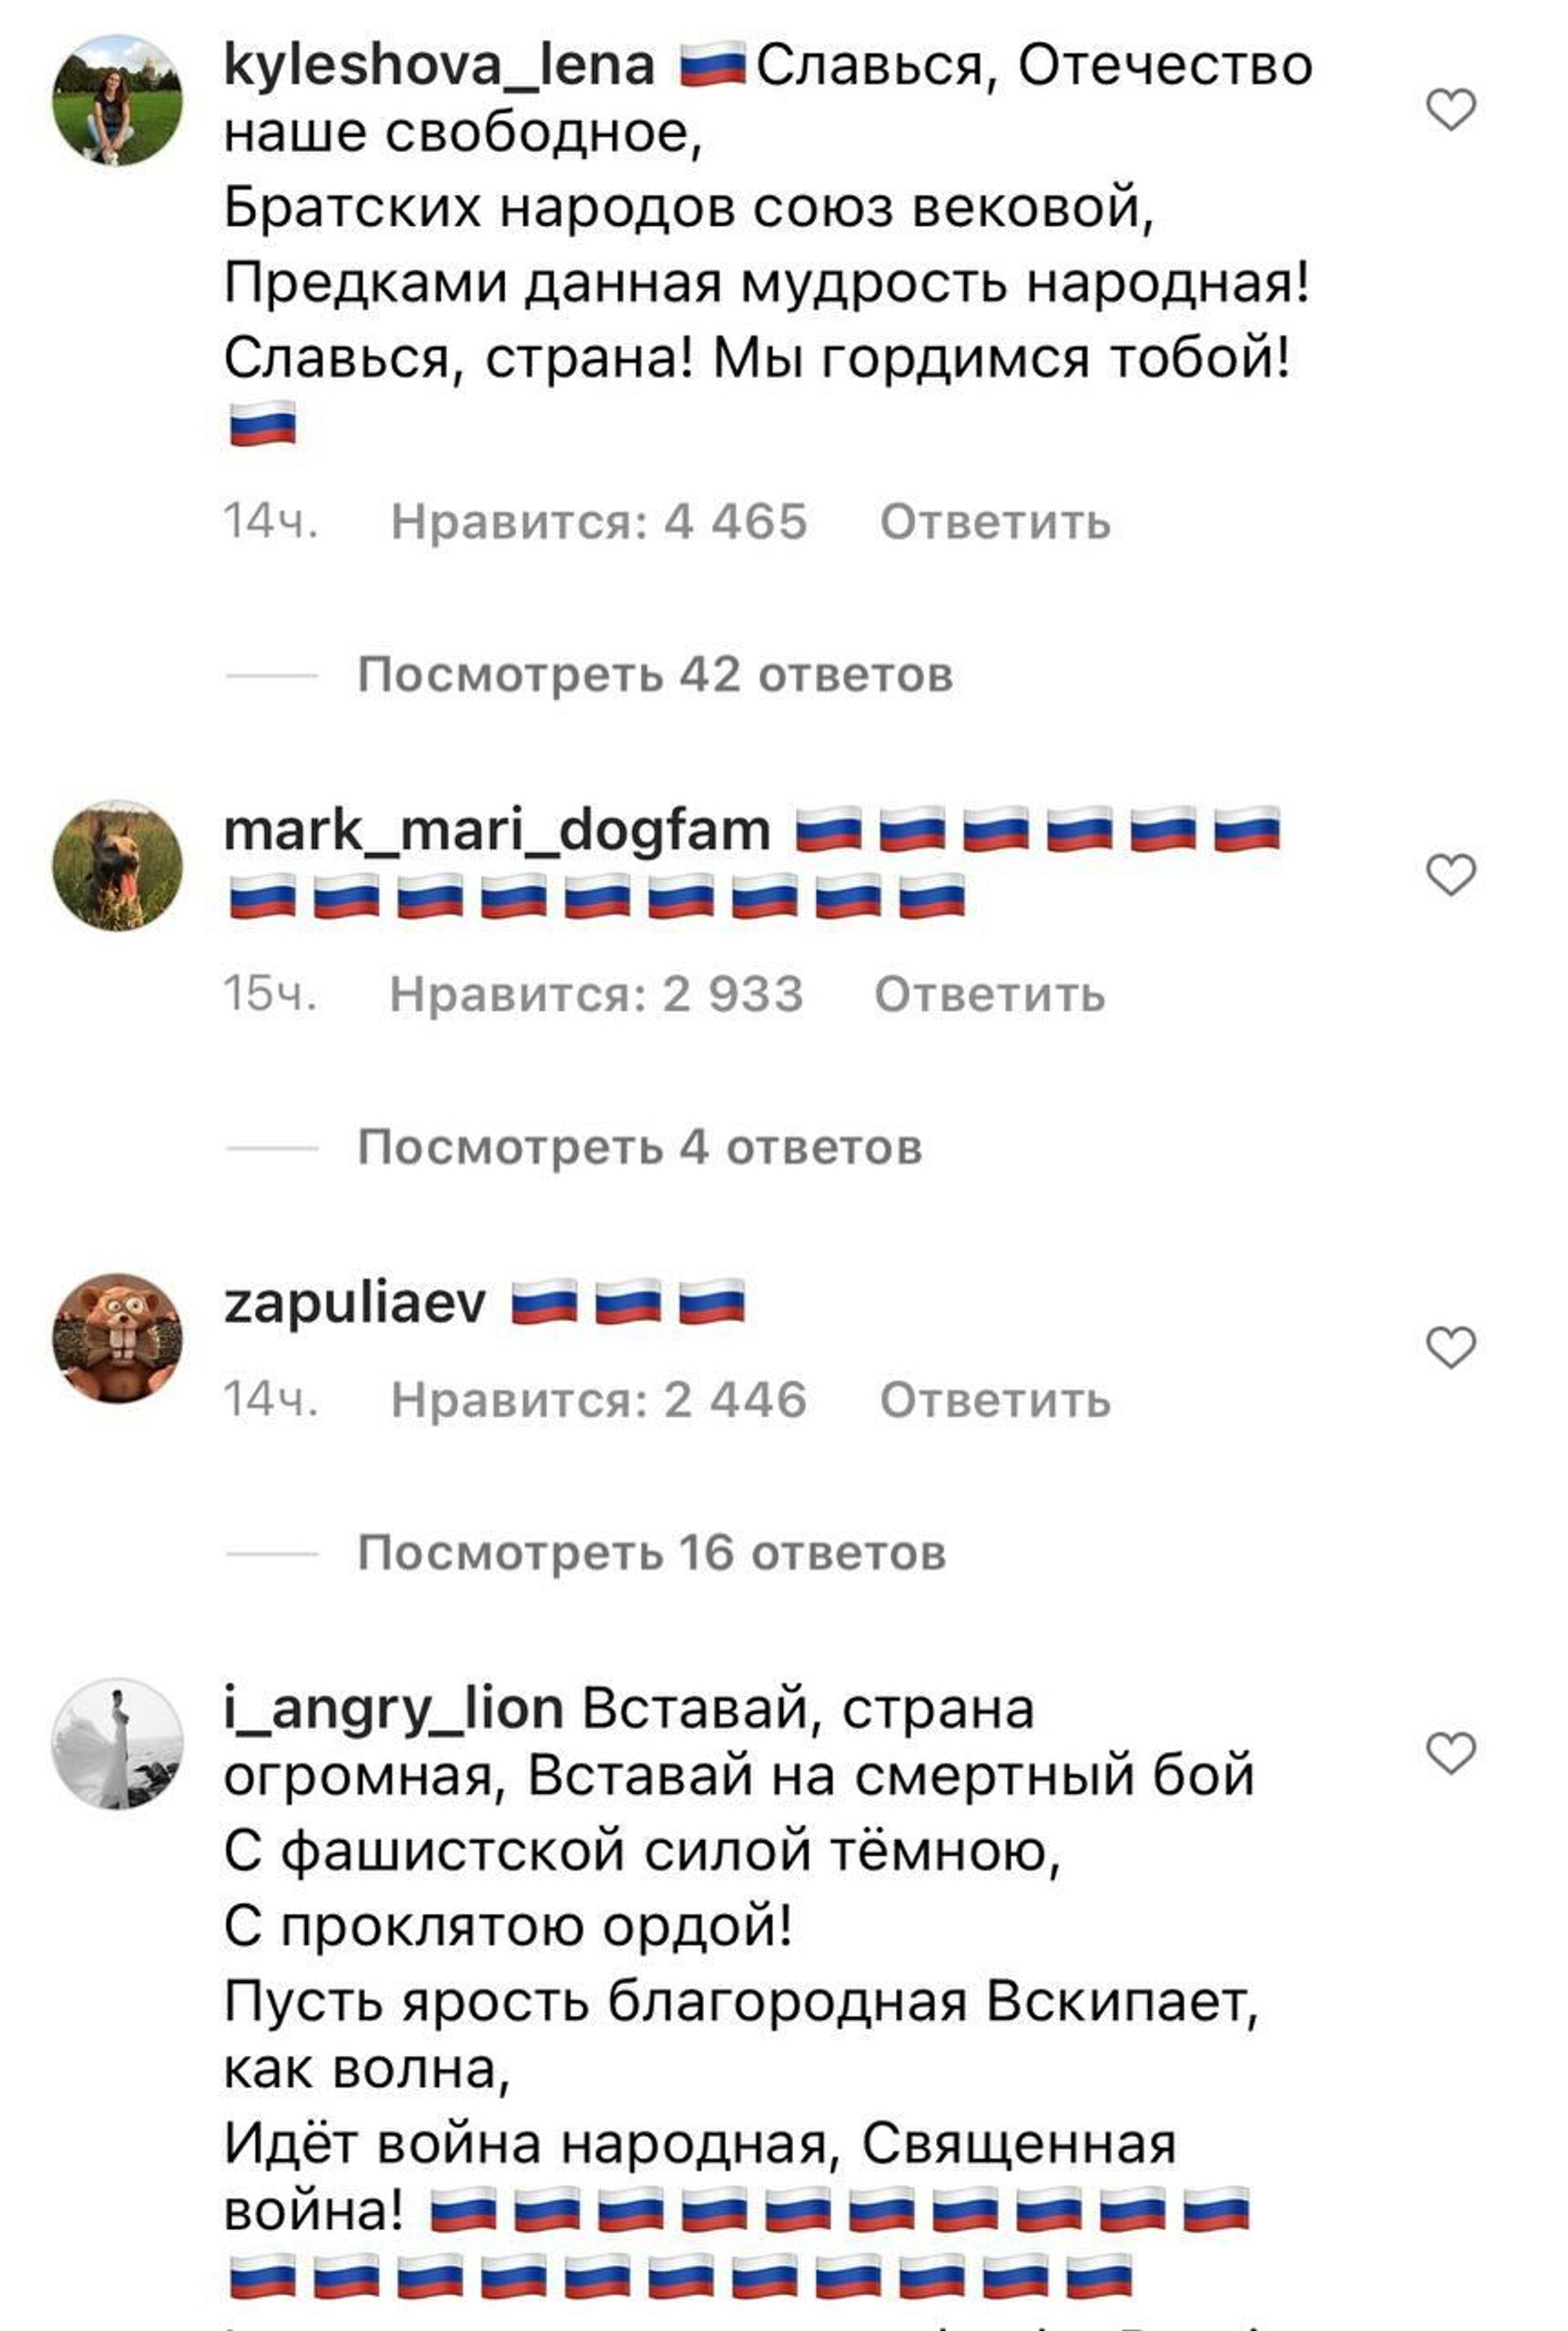 Комментарии в социальной сети Instagram - Sputnik Таджикистан, 1920, 05.03.2022